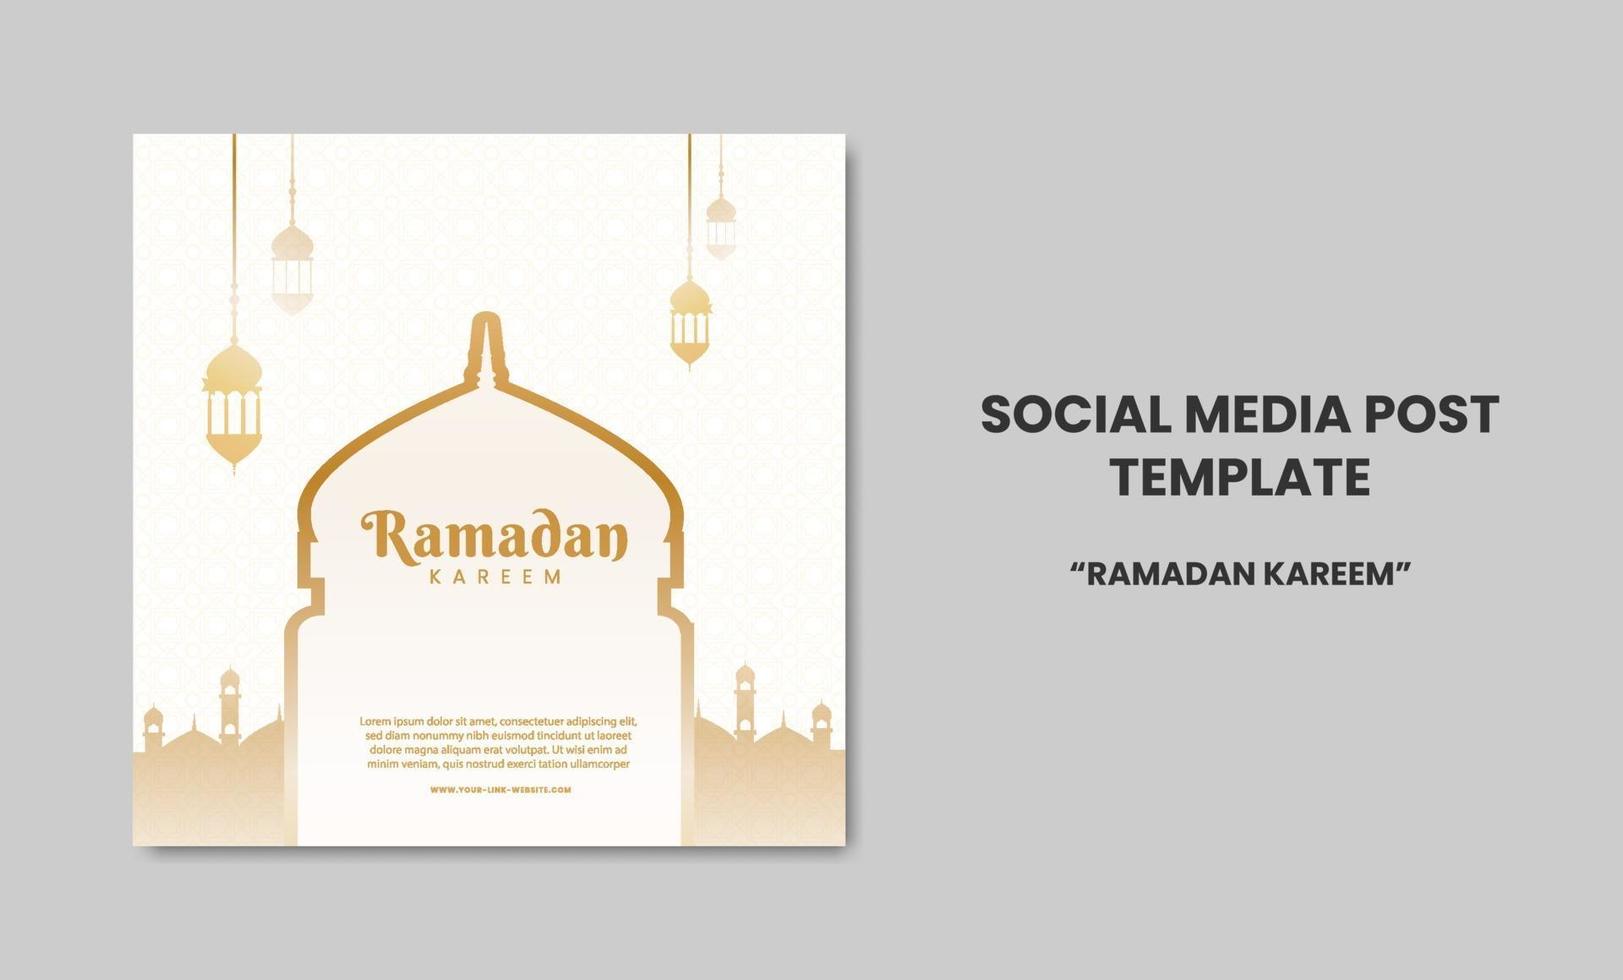 conception de modèle de message de médias sociaux de voeux islamique ramadan kareem. bannière Web publicitaire pour carte de voeux, bon, modèle de publication sur les médias sociaux pour un événement islamique vecteur